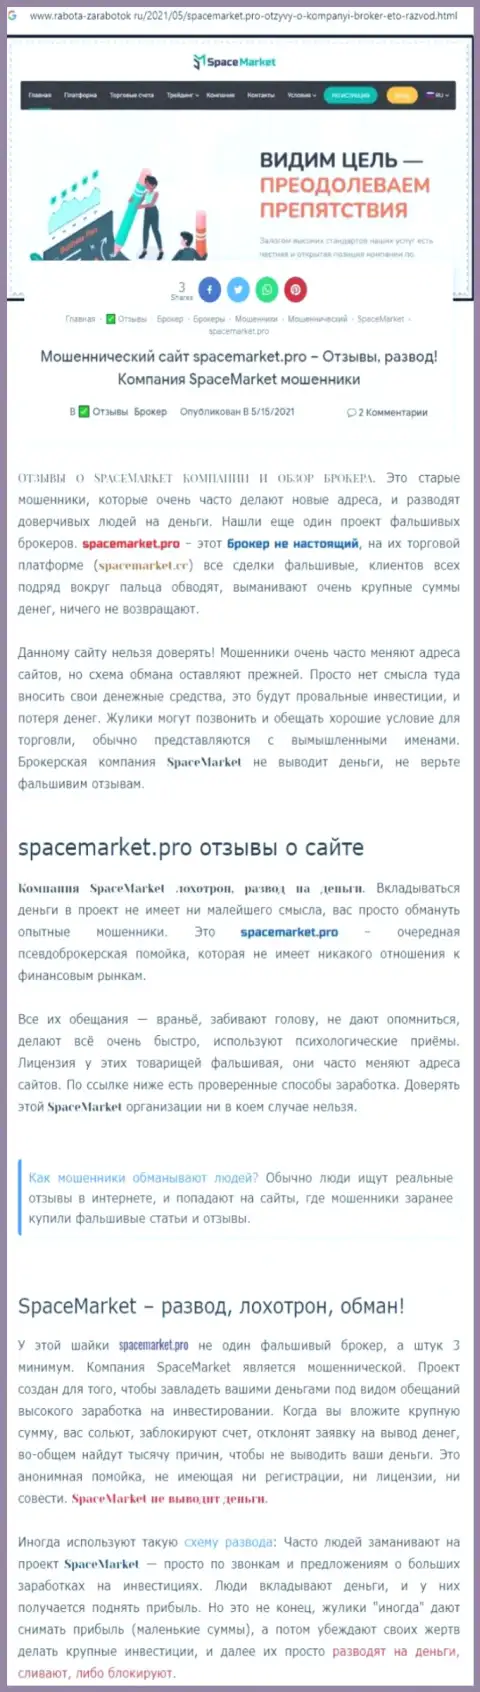 Мошенники Space Market нагло разводят - БУДЬТЕ БДИТЕЛЬНЫ (обзор)